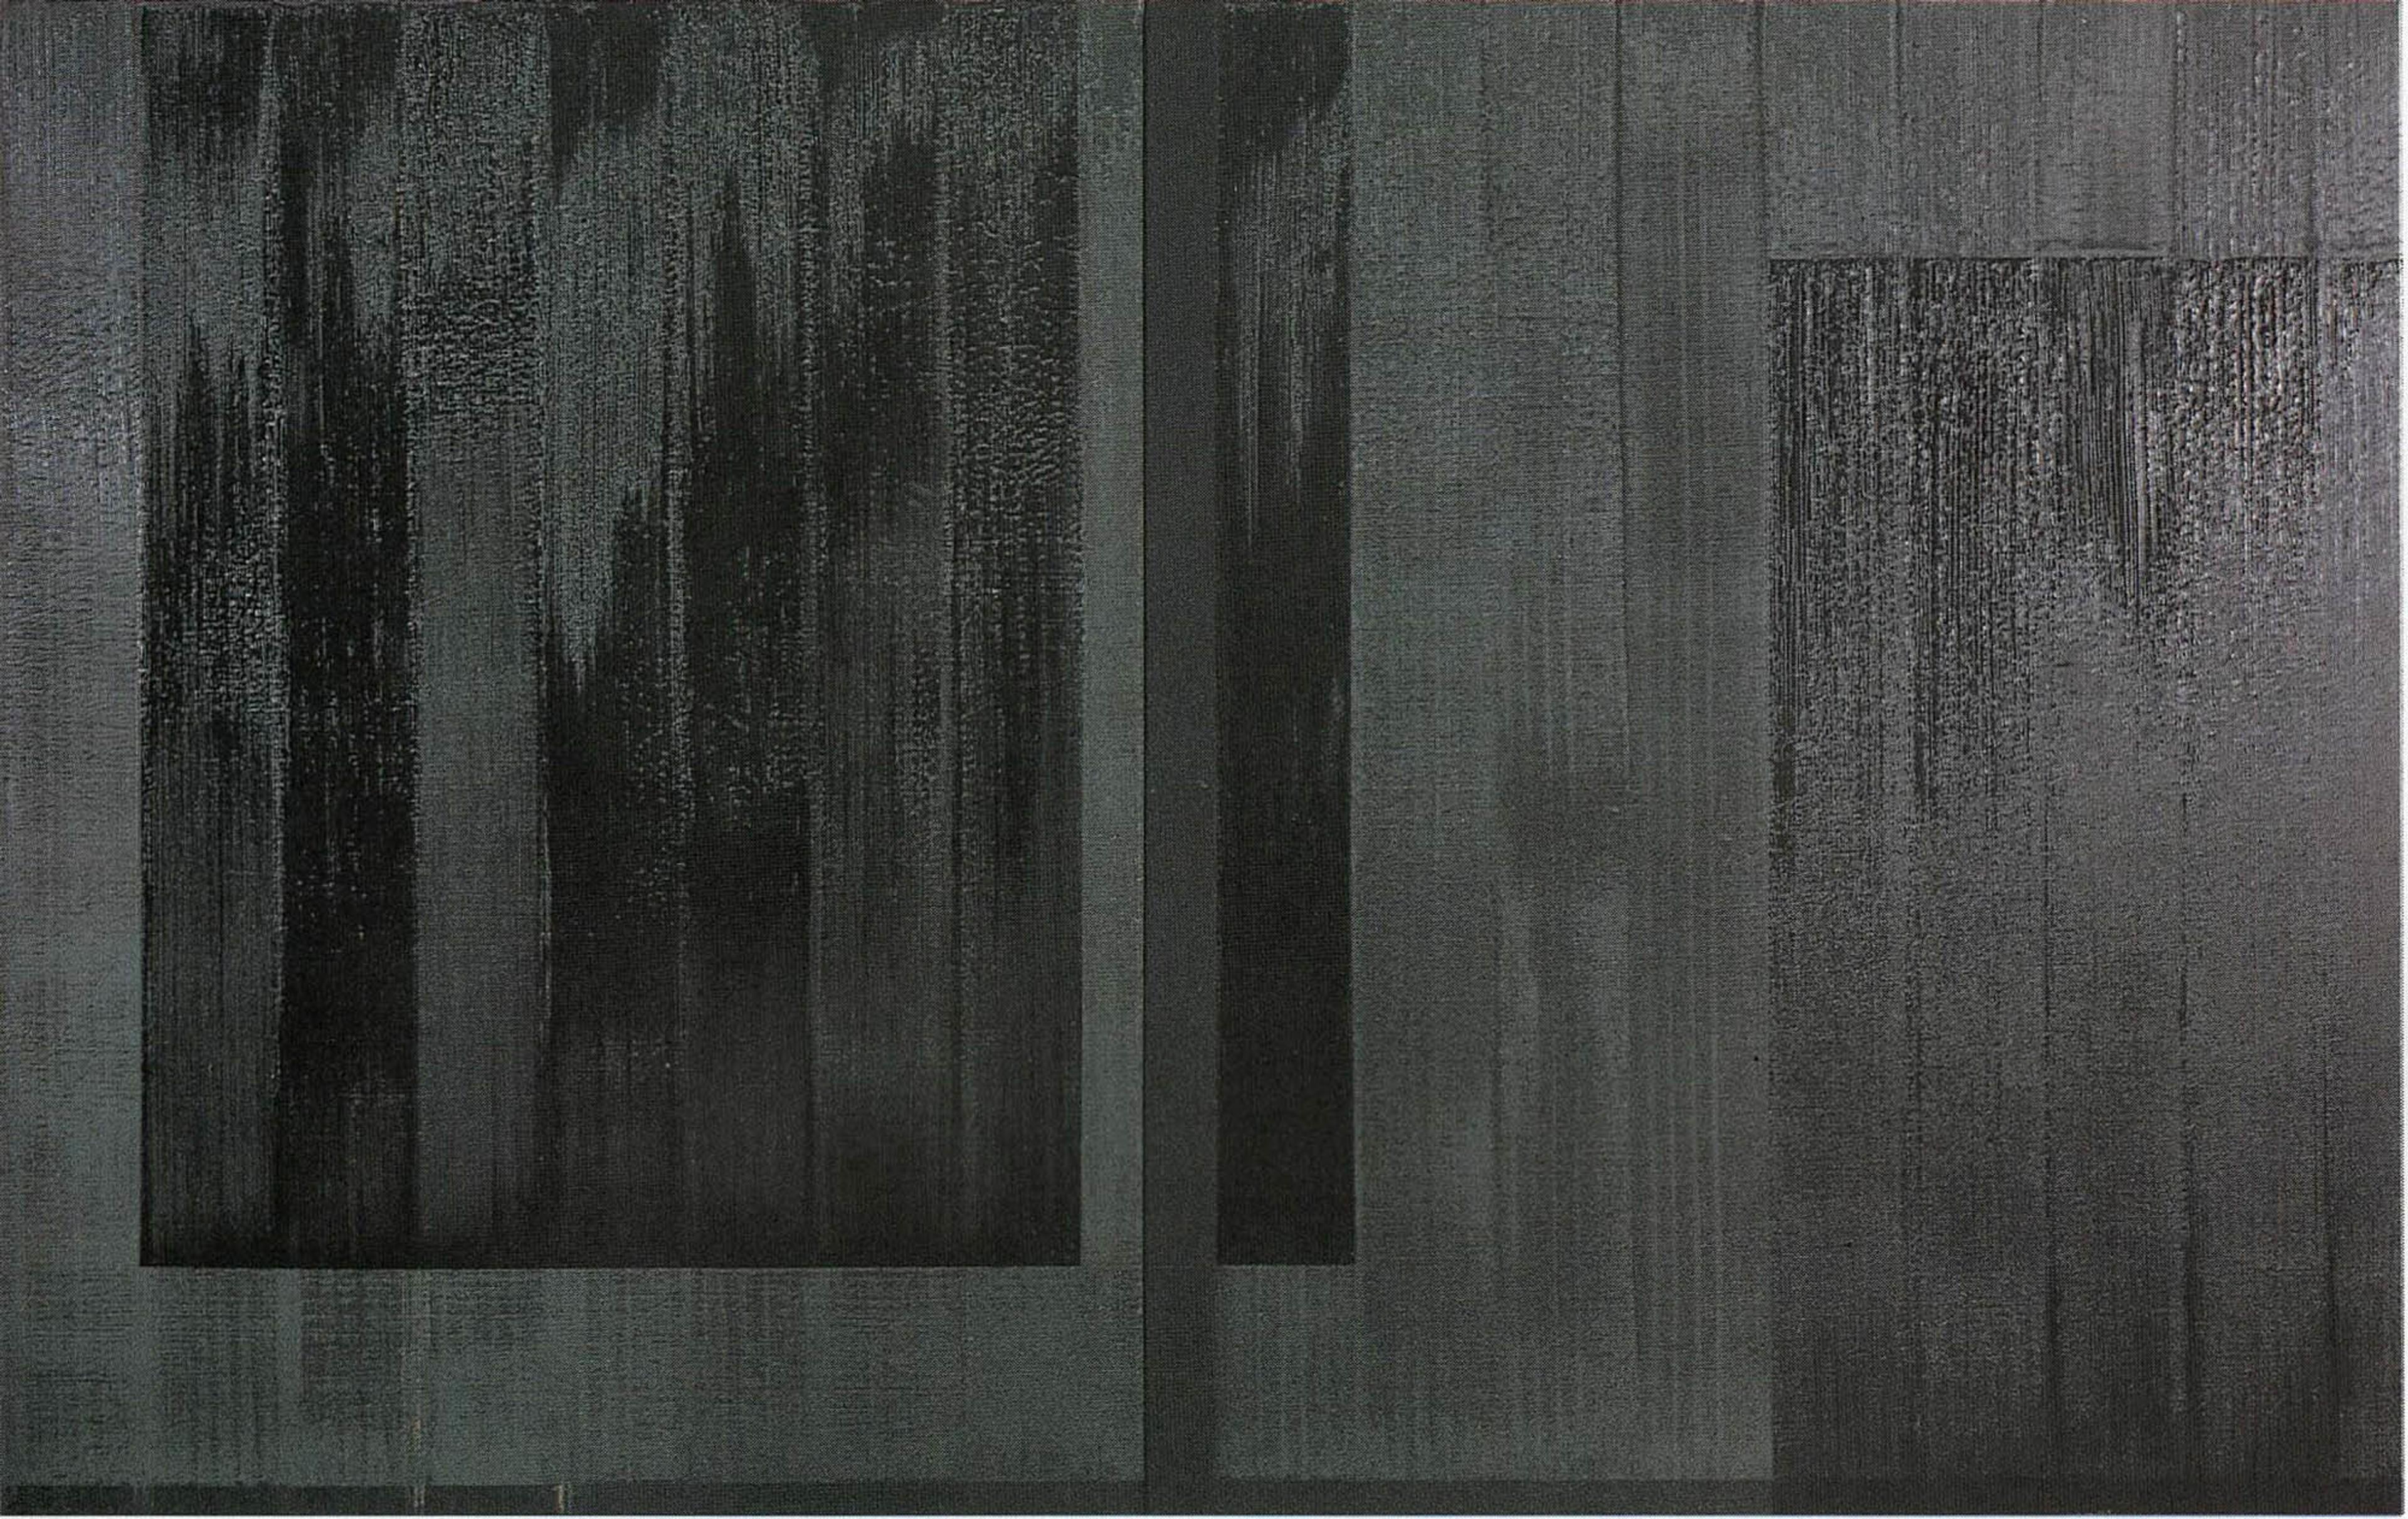 (1998) Ciarán Lennon, Horizontal Hold_, 1998, oil on linen, diptych, 183 x 314 cm. 